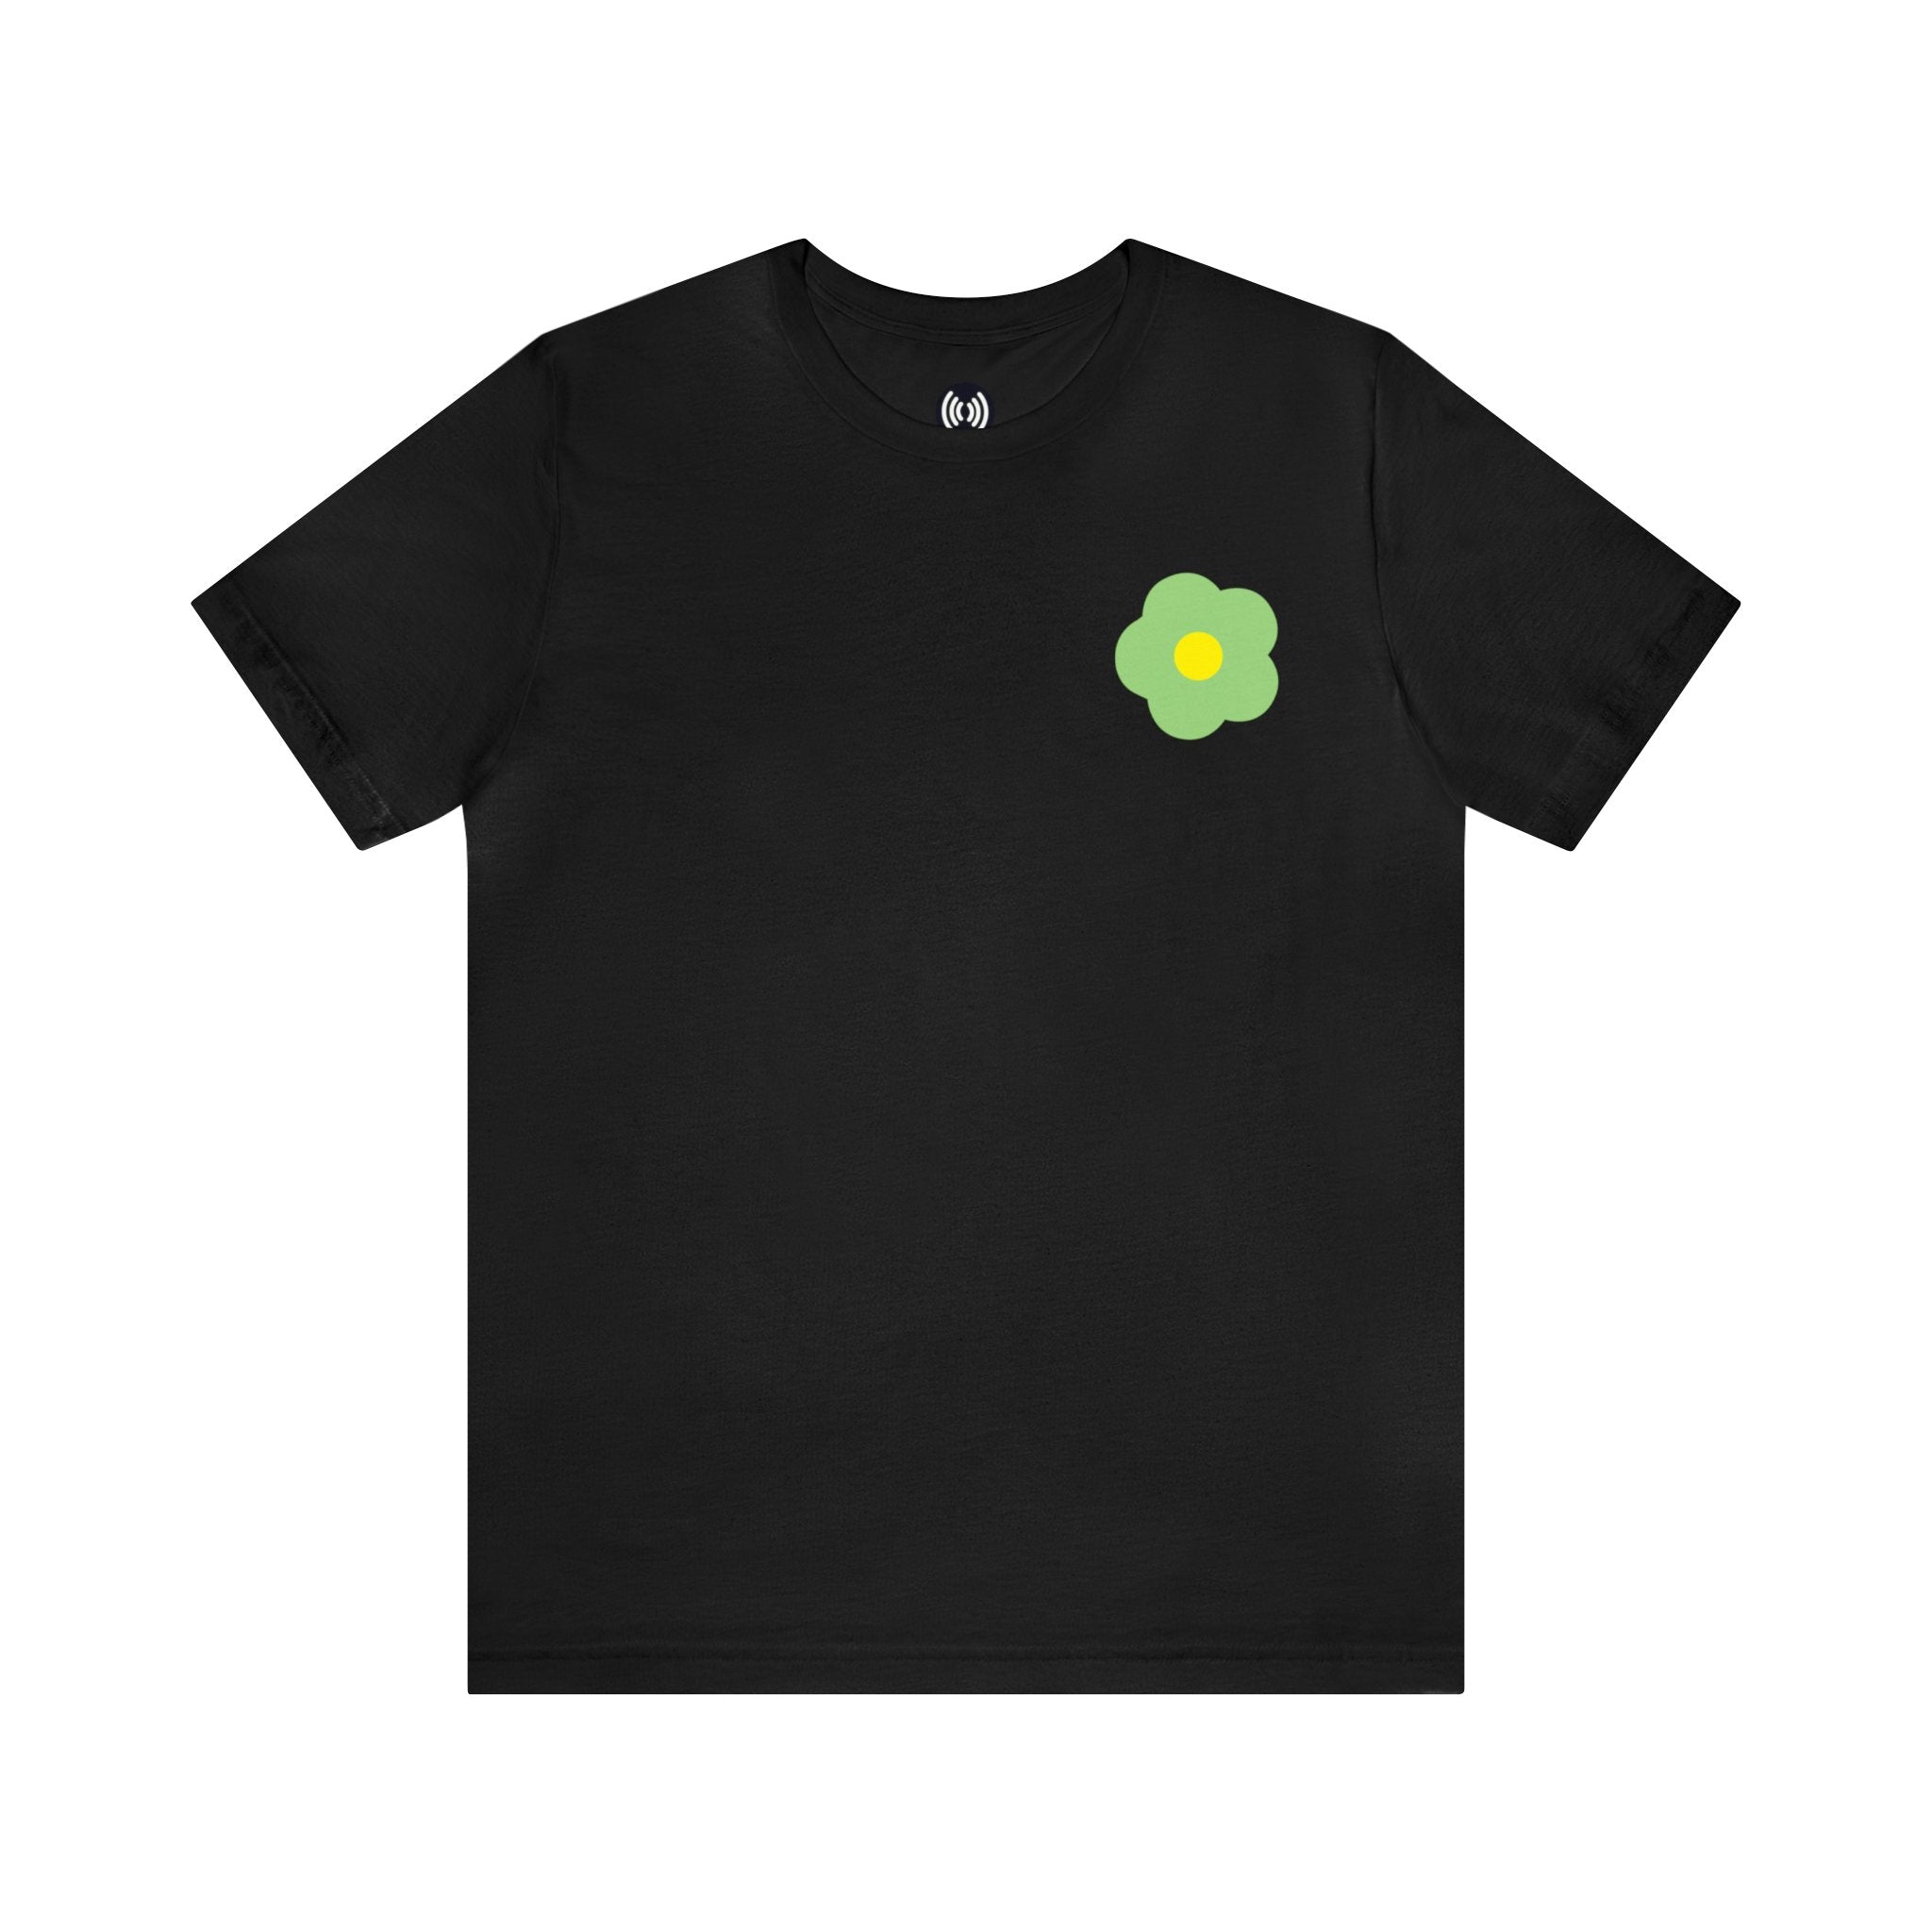 Cute Green Flower Jersey Short Sleeve Tee | Great Gift for teens | Fun Tee Shirt